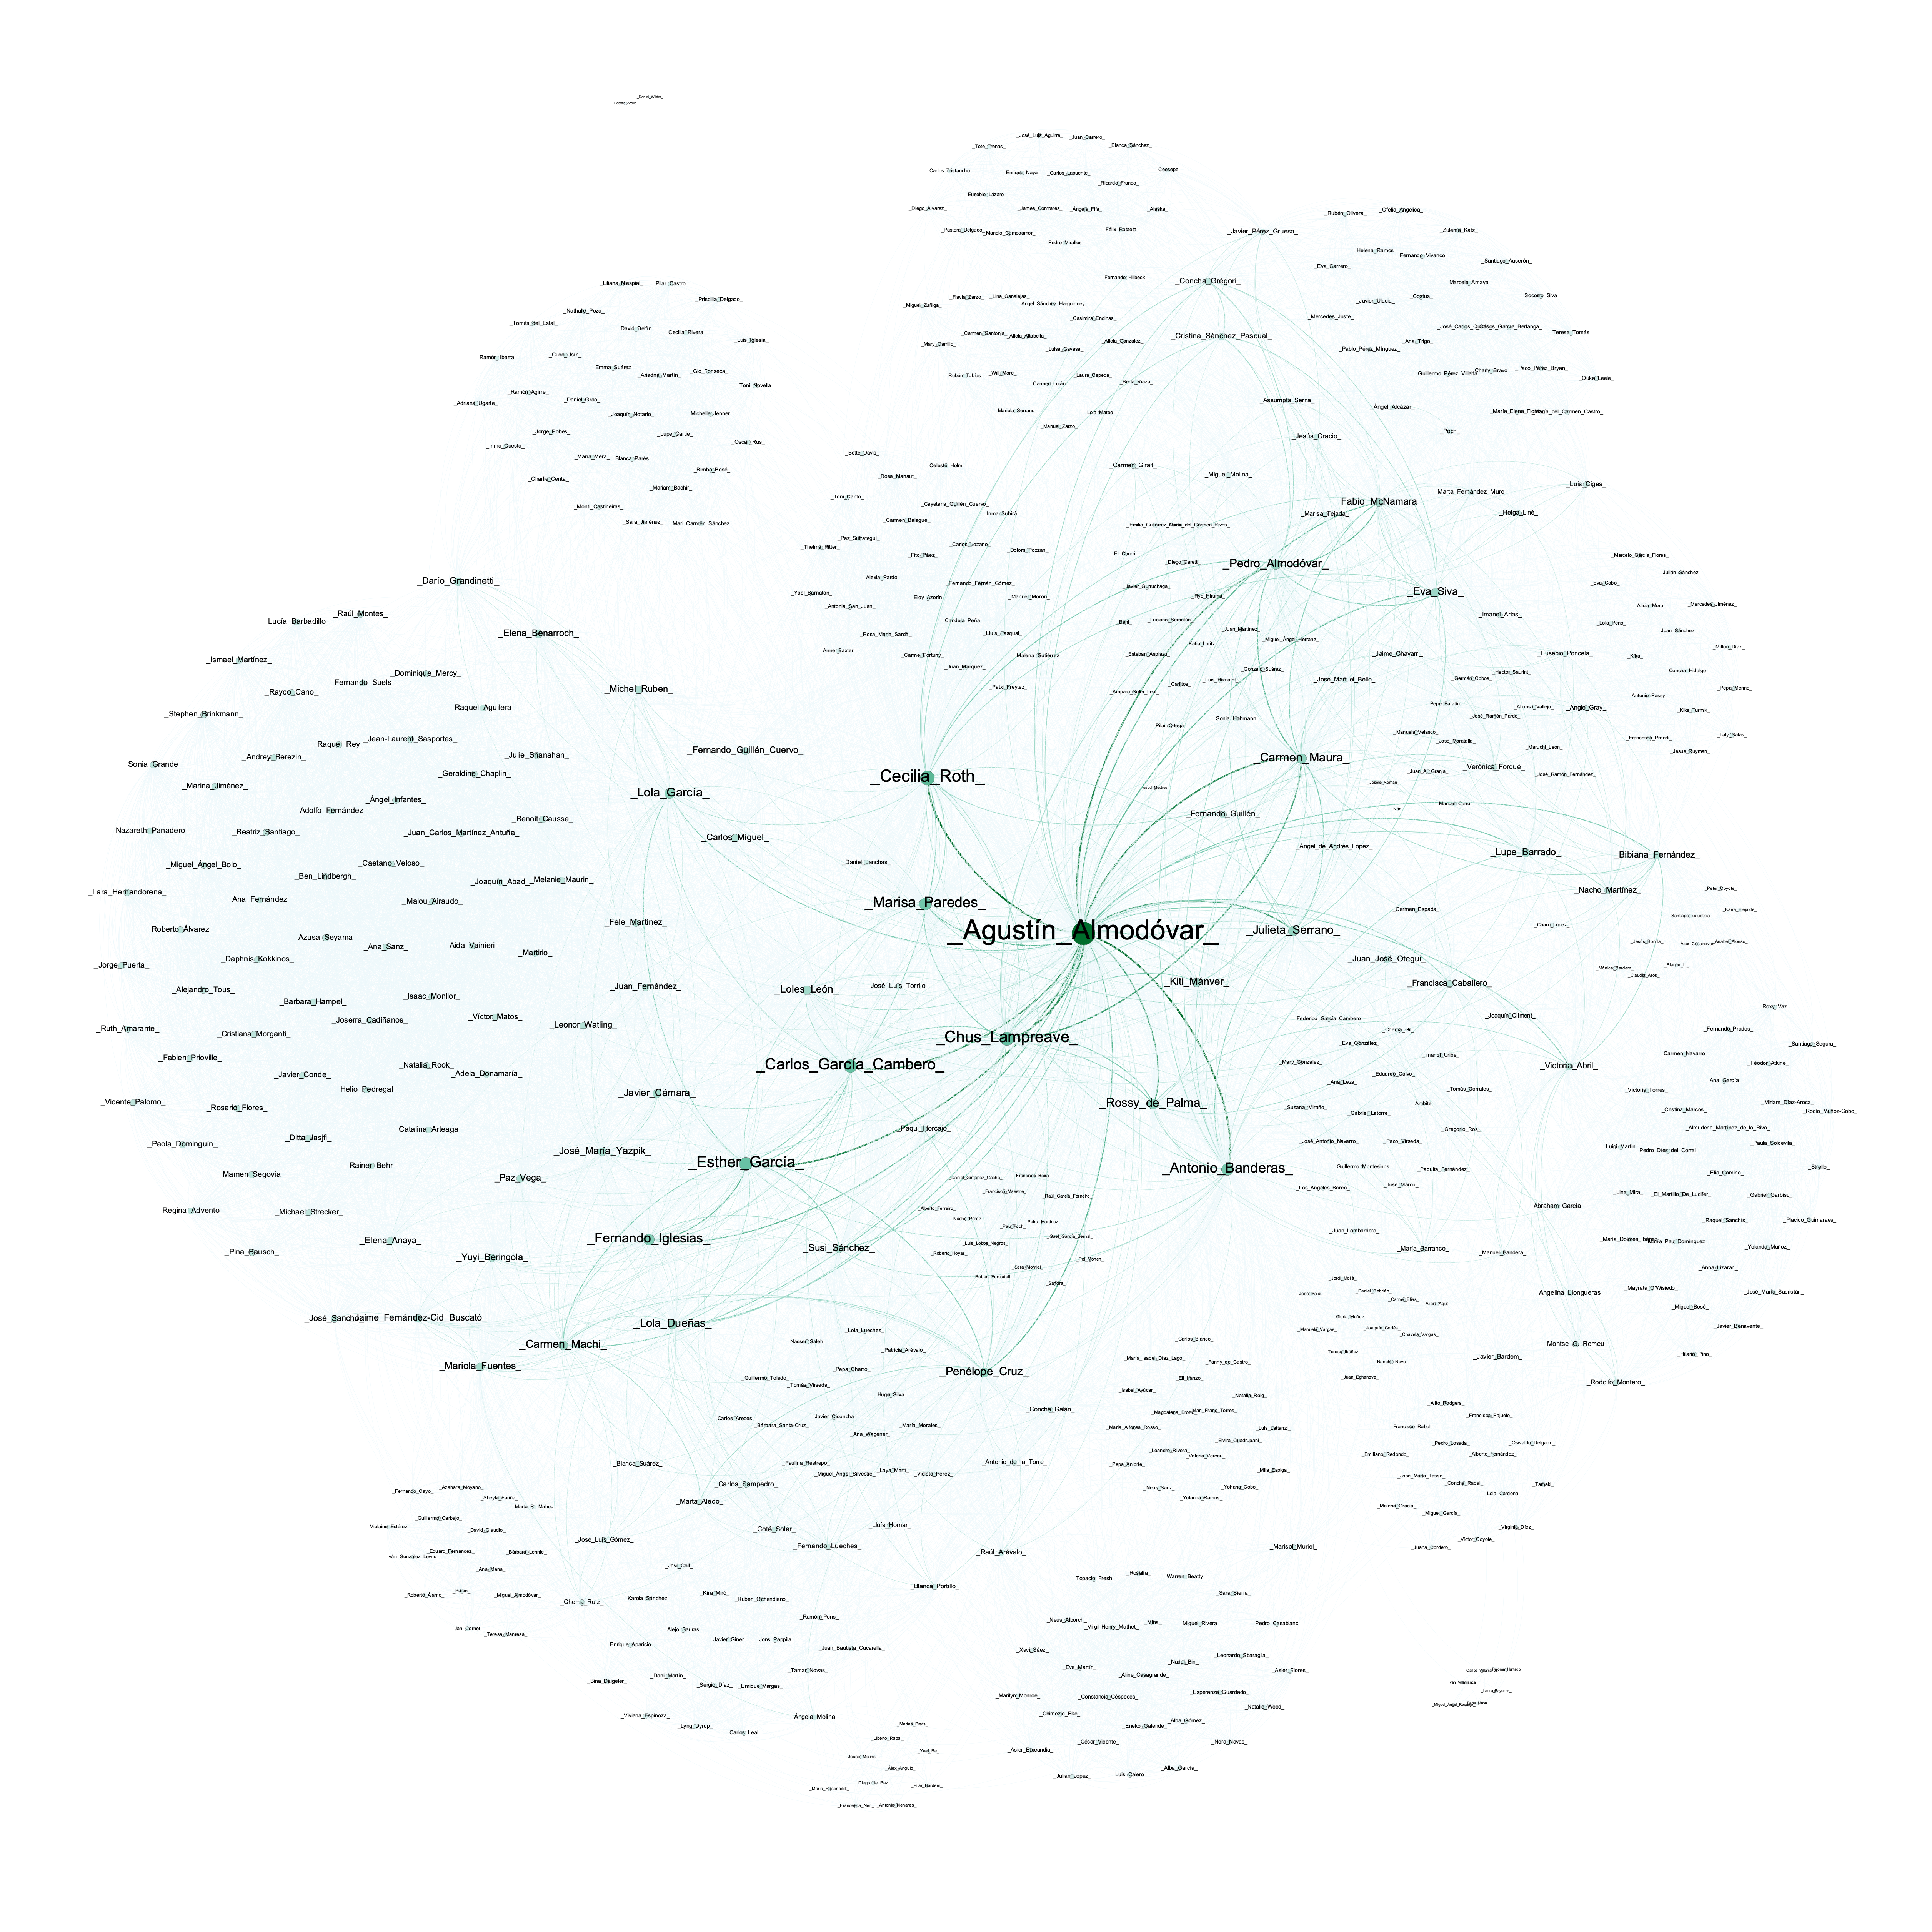 Visualización de la red del reparto de Almodóvar con medidas de centralidad y peso de las aristas